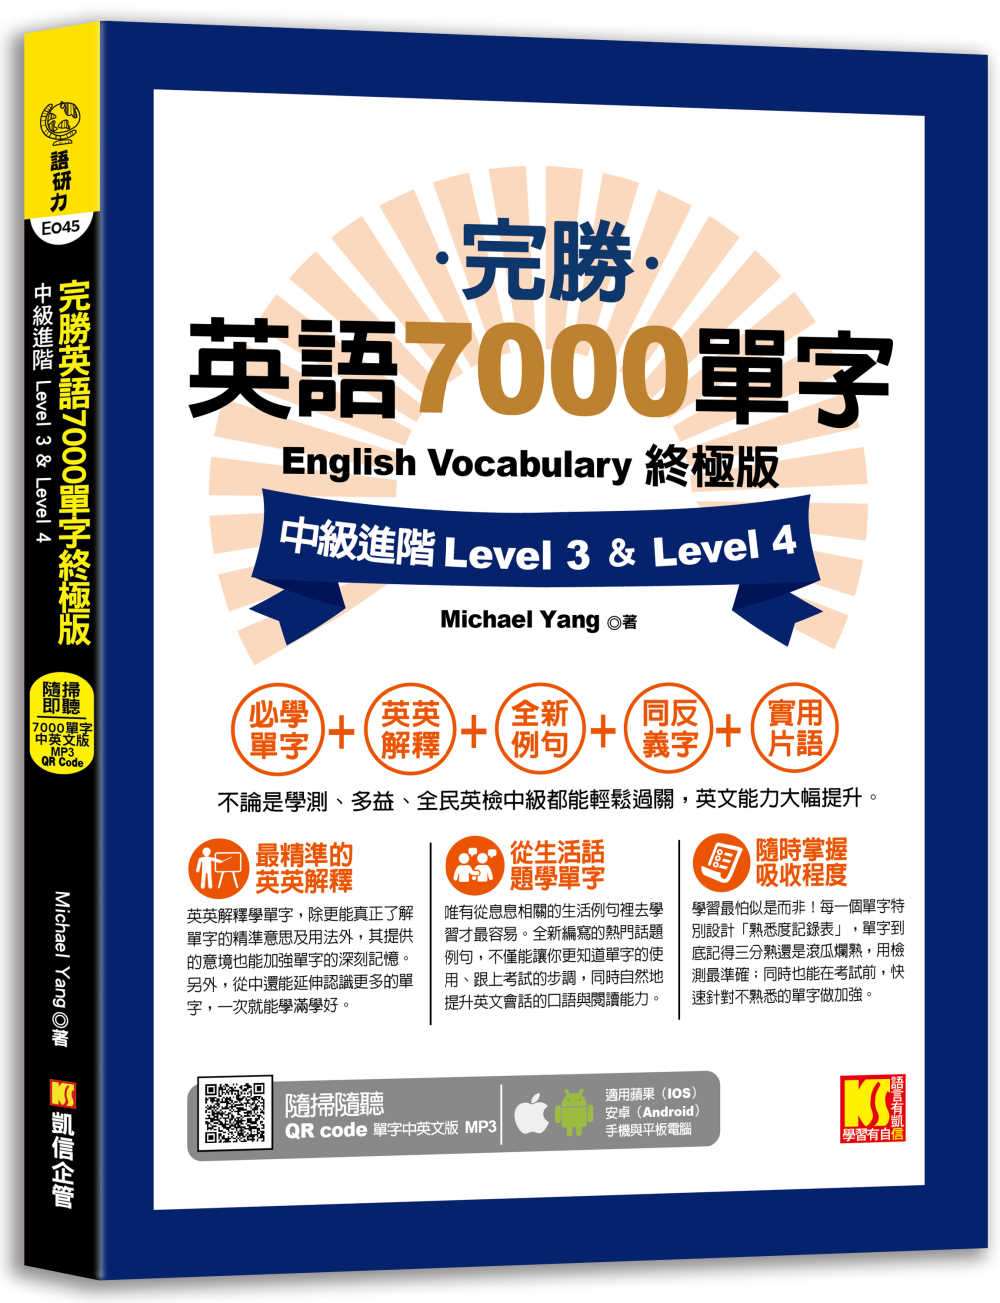 完勝英語7000單字終極版：中級進階 Level 3 & Level 4（隨掃即聽 QR Code單字mp3）